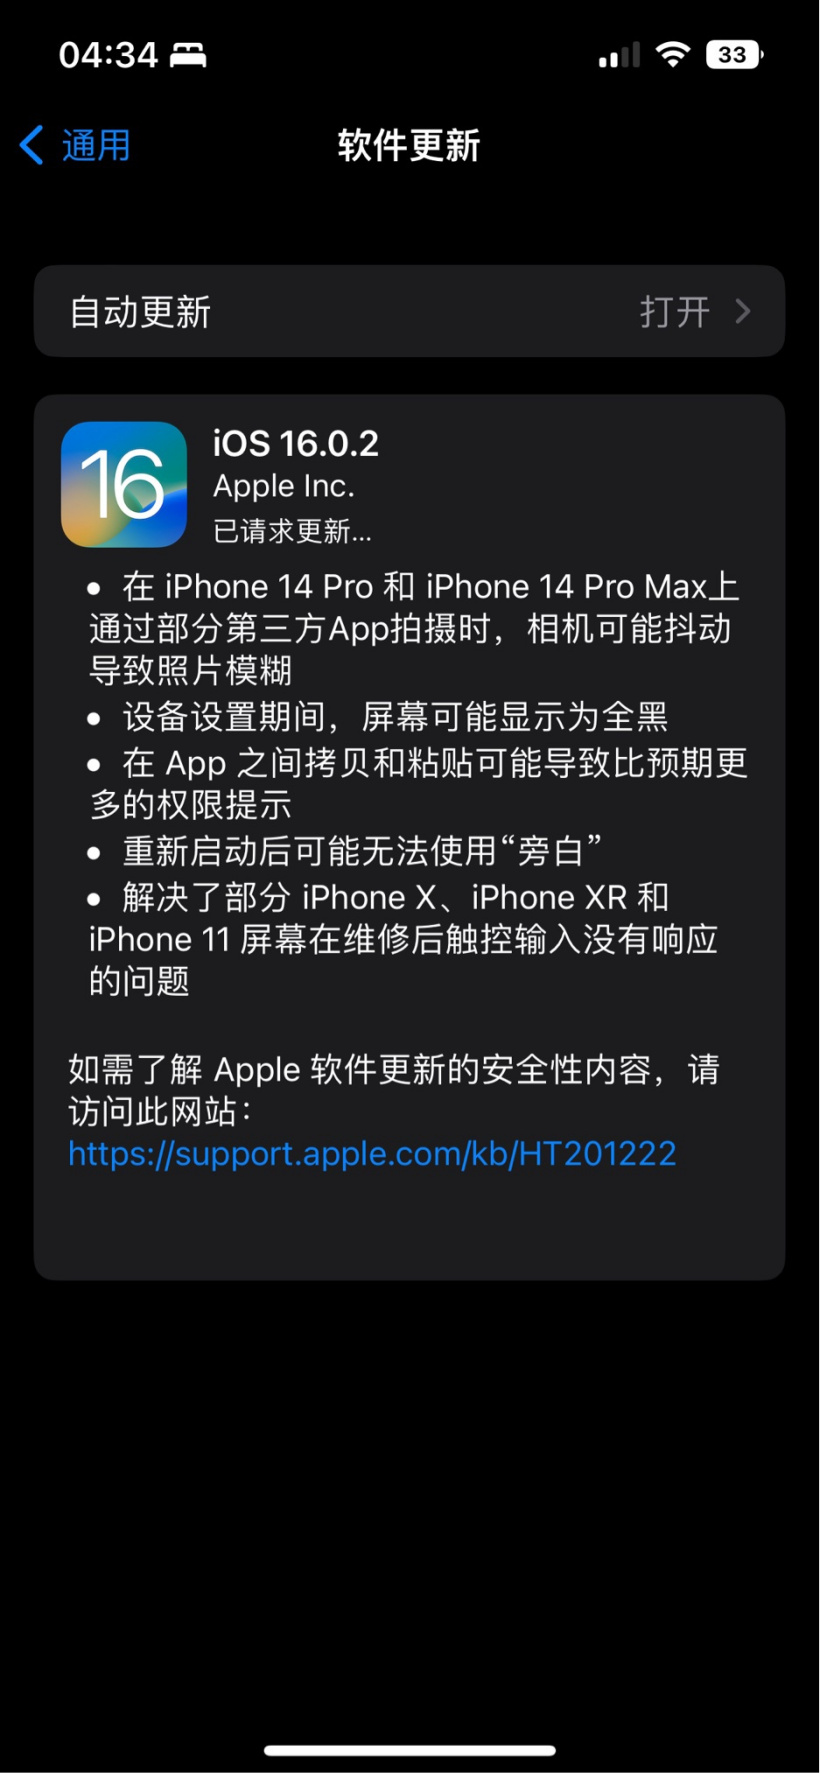 苹果发布 iOS 16.0.2 正式版更新：修复粘贴弹窗